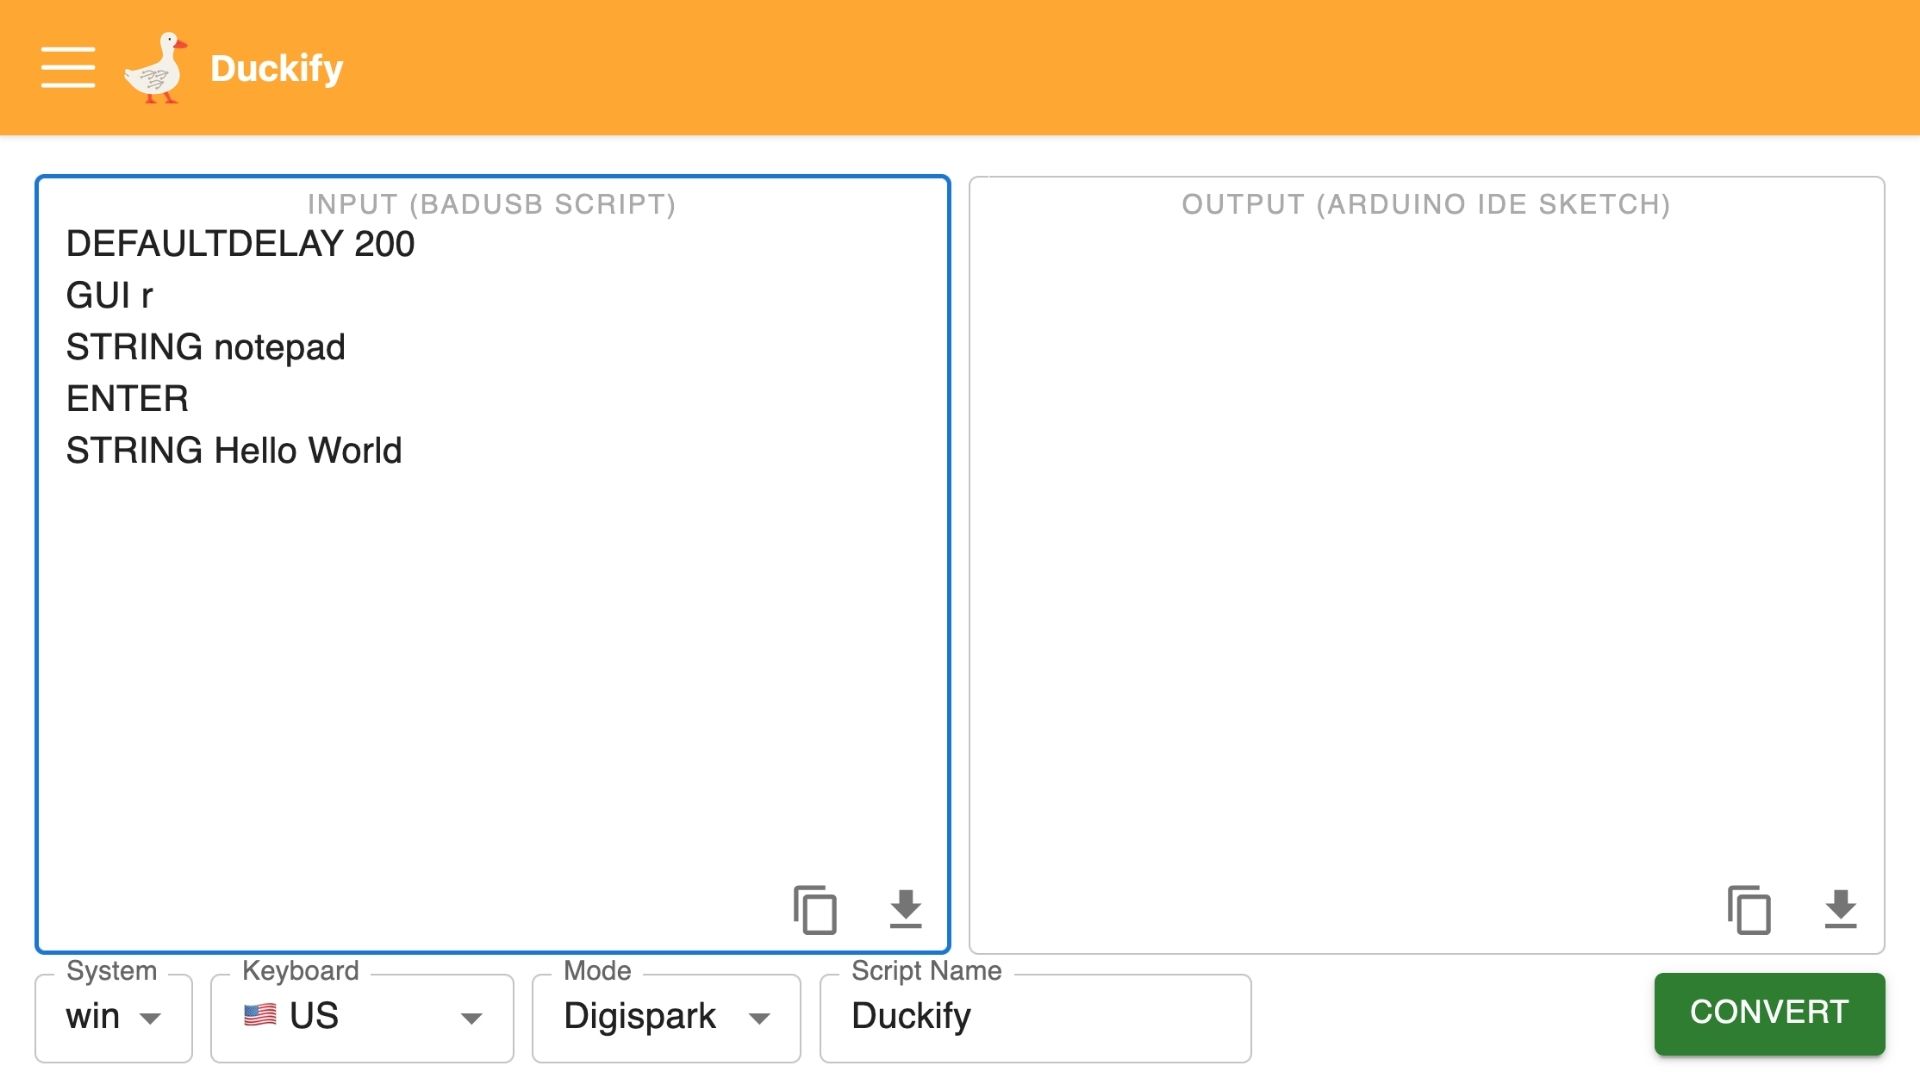 Duckify Usage Adding BadUSB Script